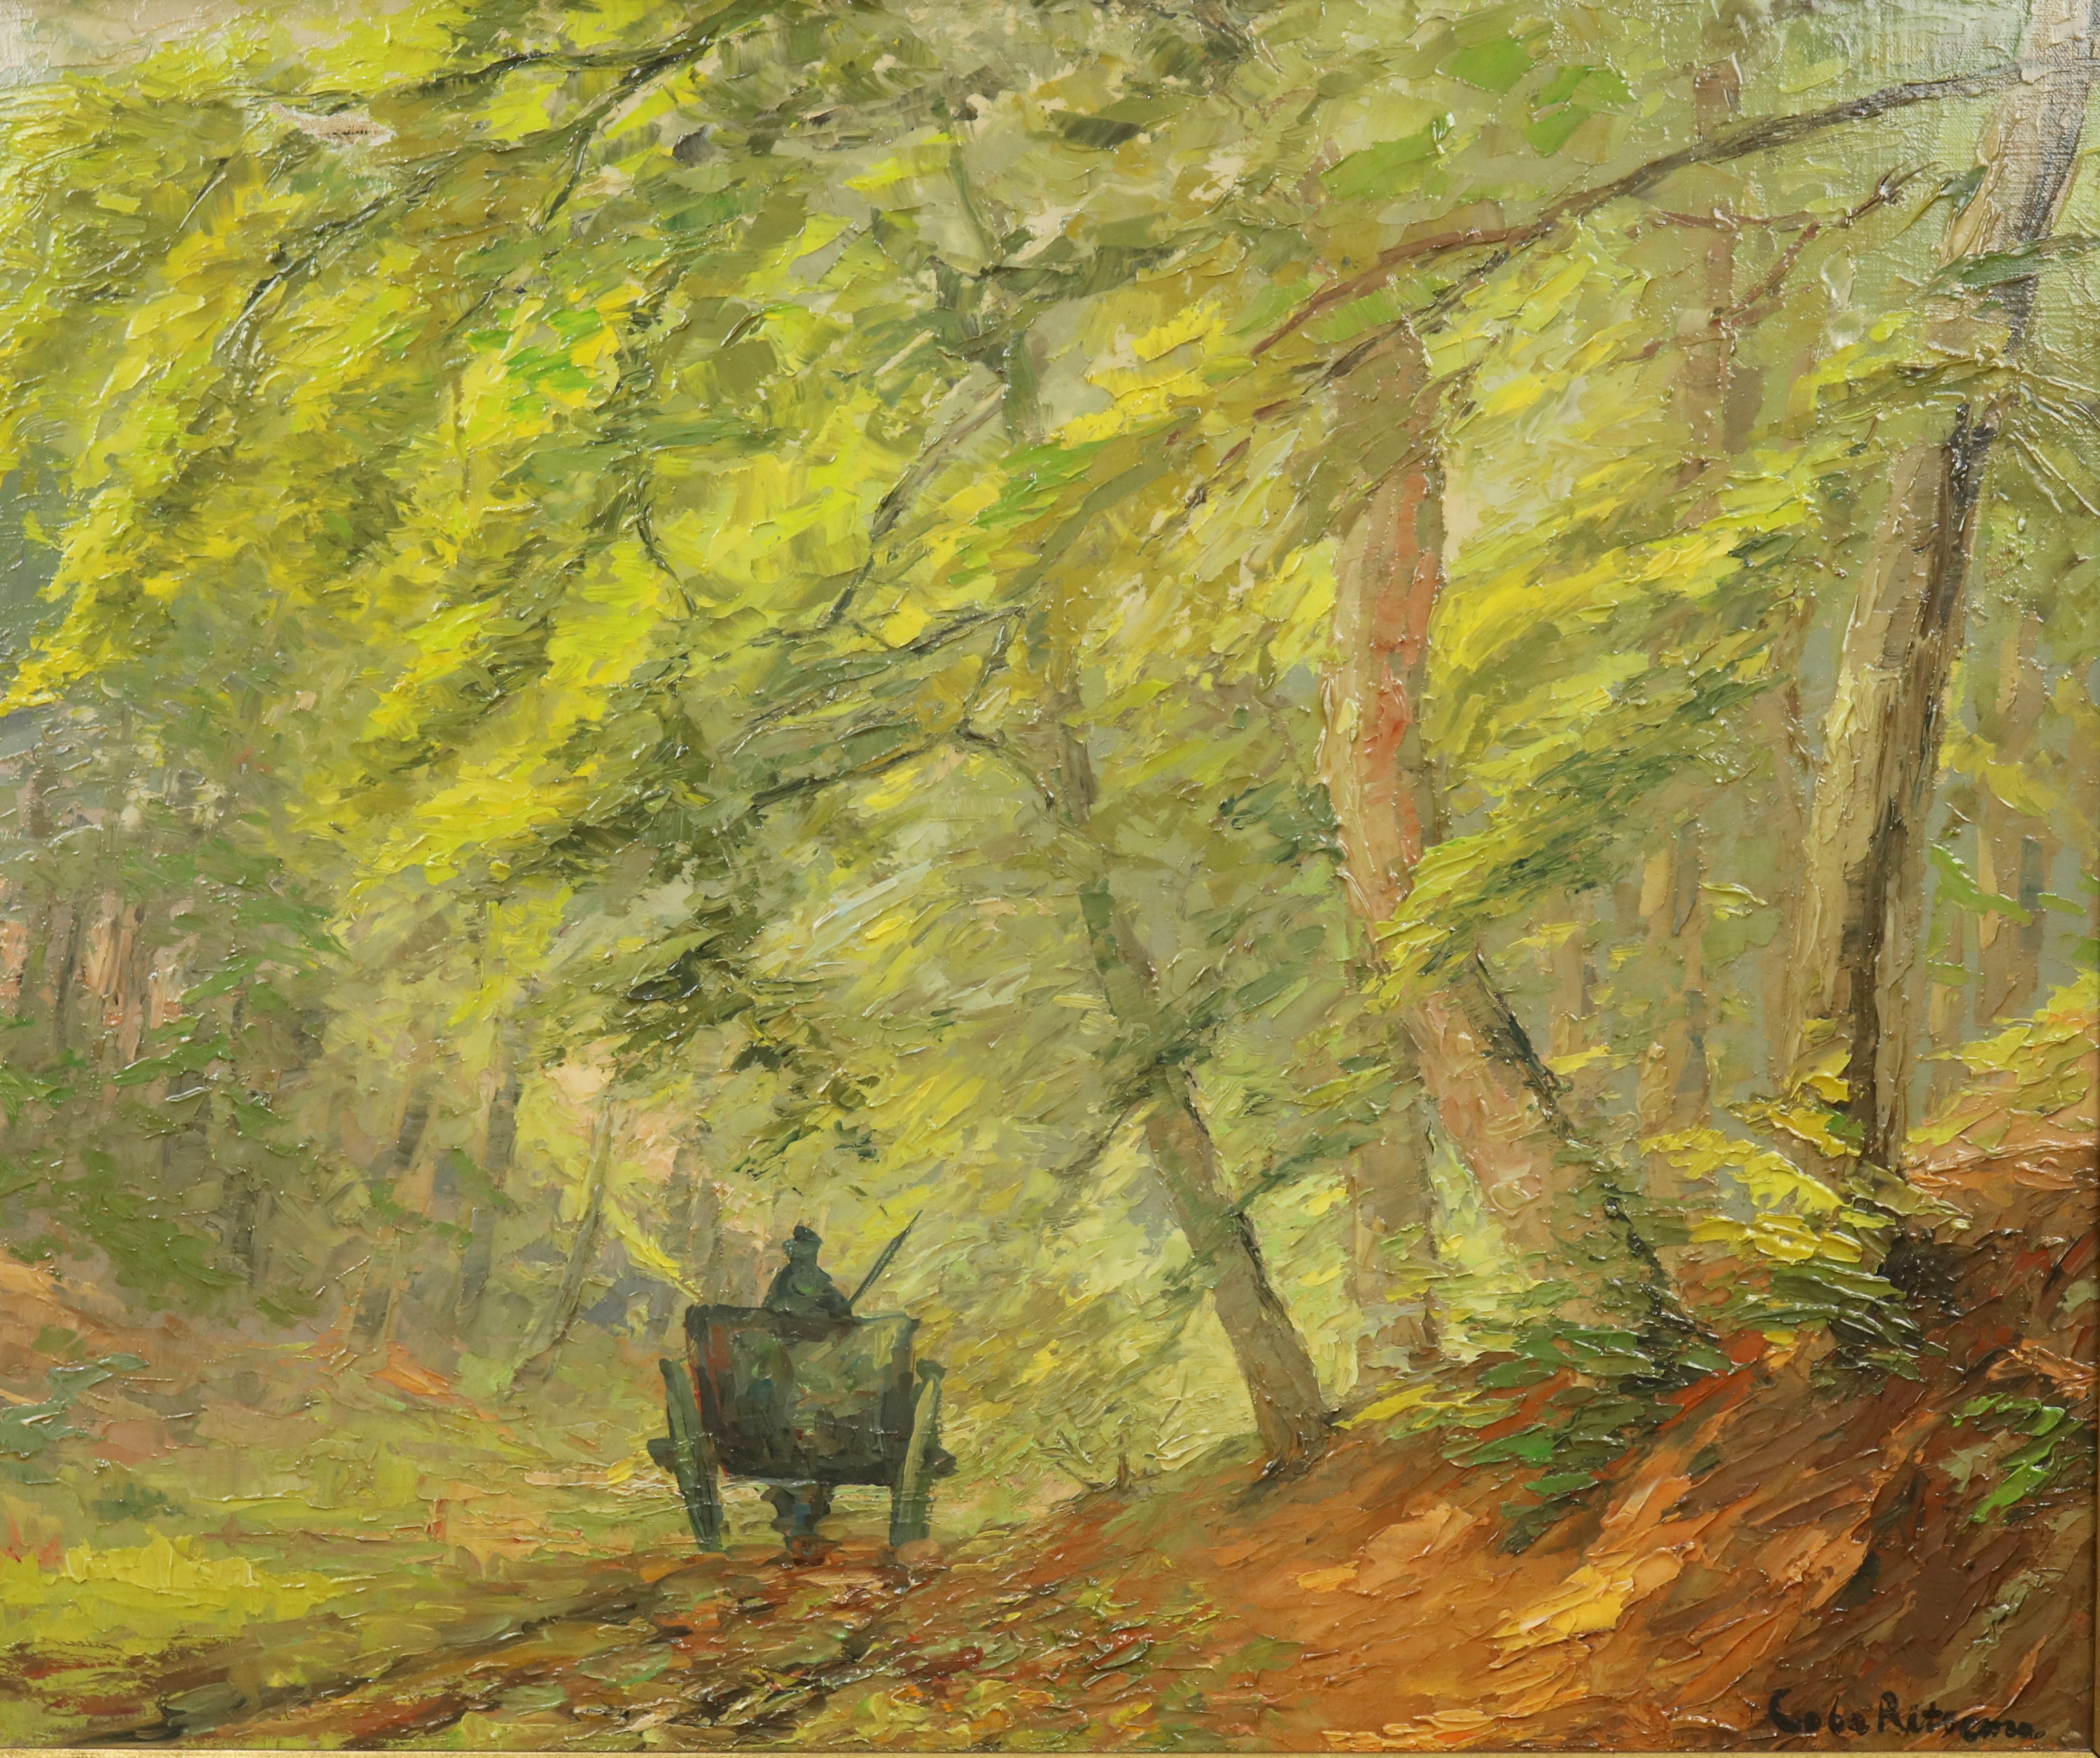 Man met paard en wagen op een bospad